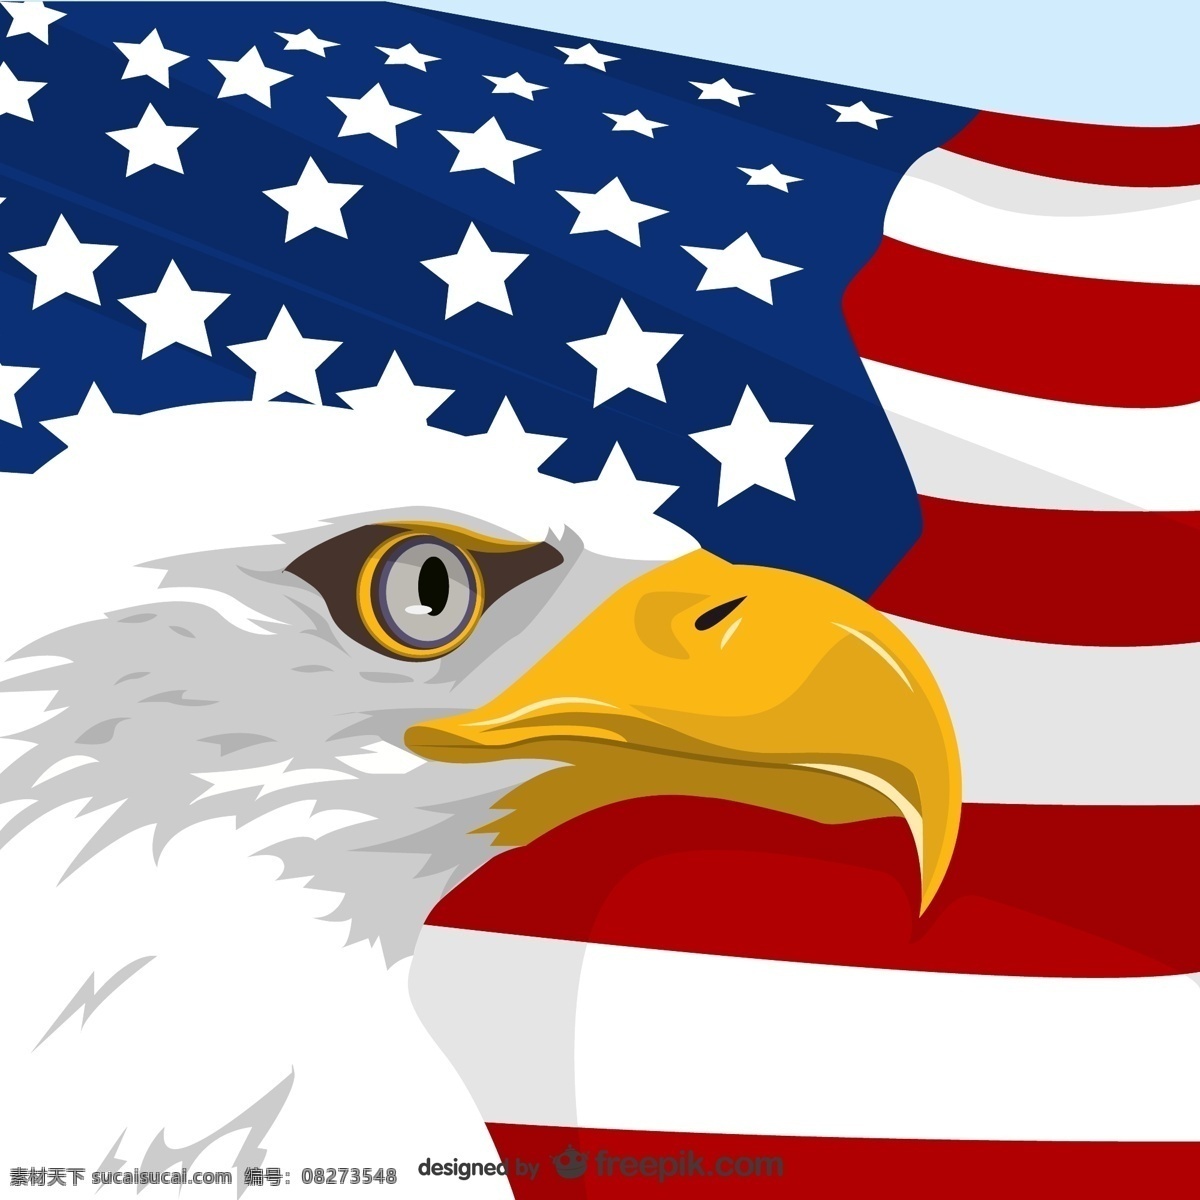 美国 鹰 国旗 背景 标志 模板 壁纸 图形 布局 平面设计 事件 元素 插图 设计元素 独立纪念日 符号 白色